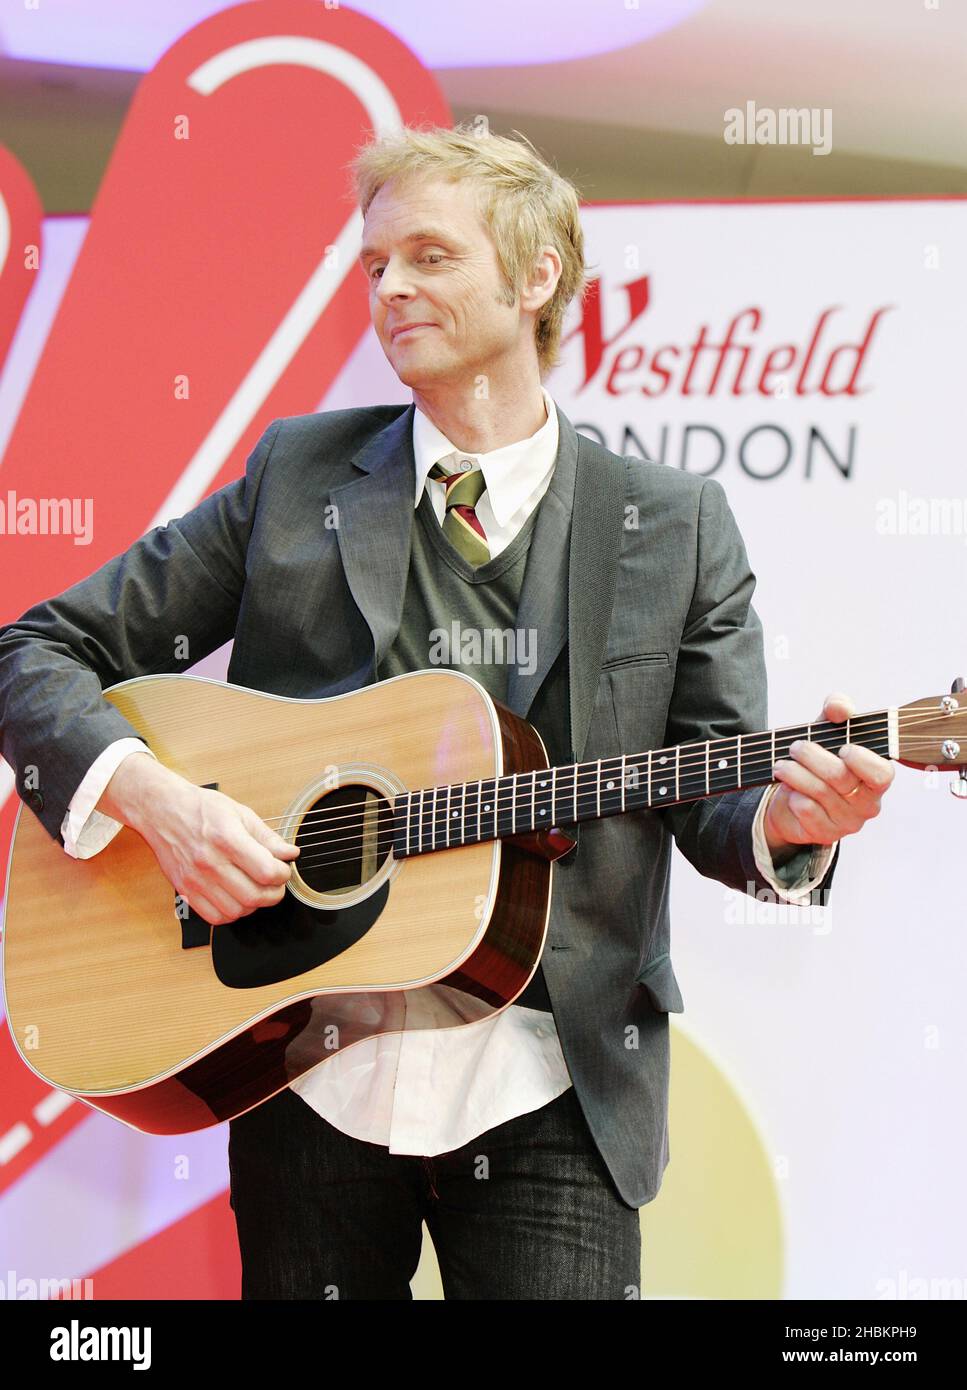 PAL Waaktaar (Gitarre) spielt auf der Bühne des Shimmer 09l im Westfield Shopping Centre, London. Stockfoto